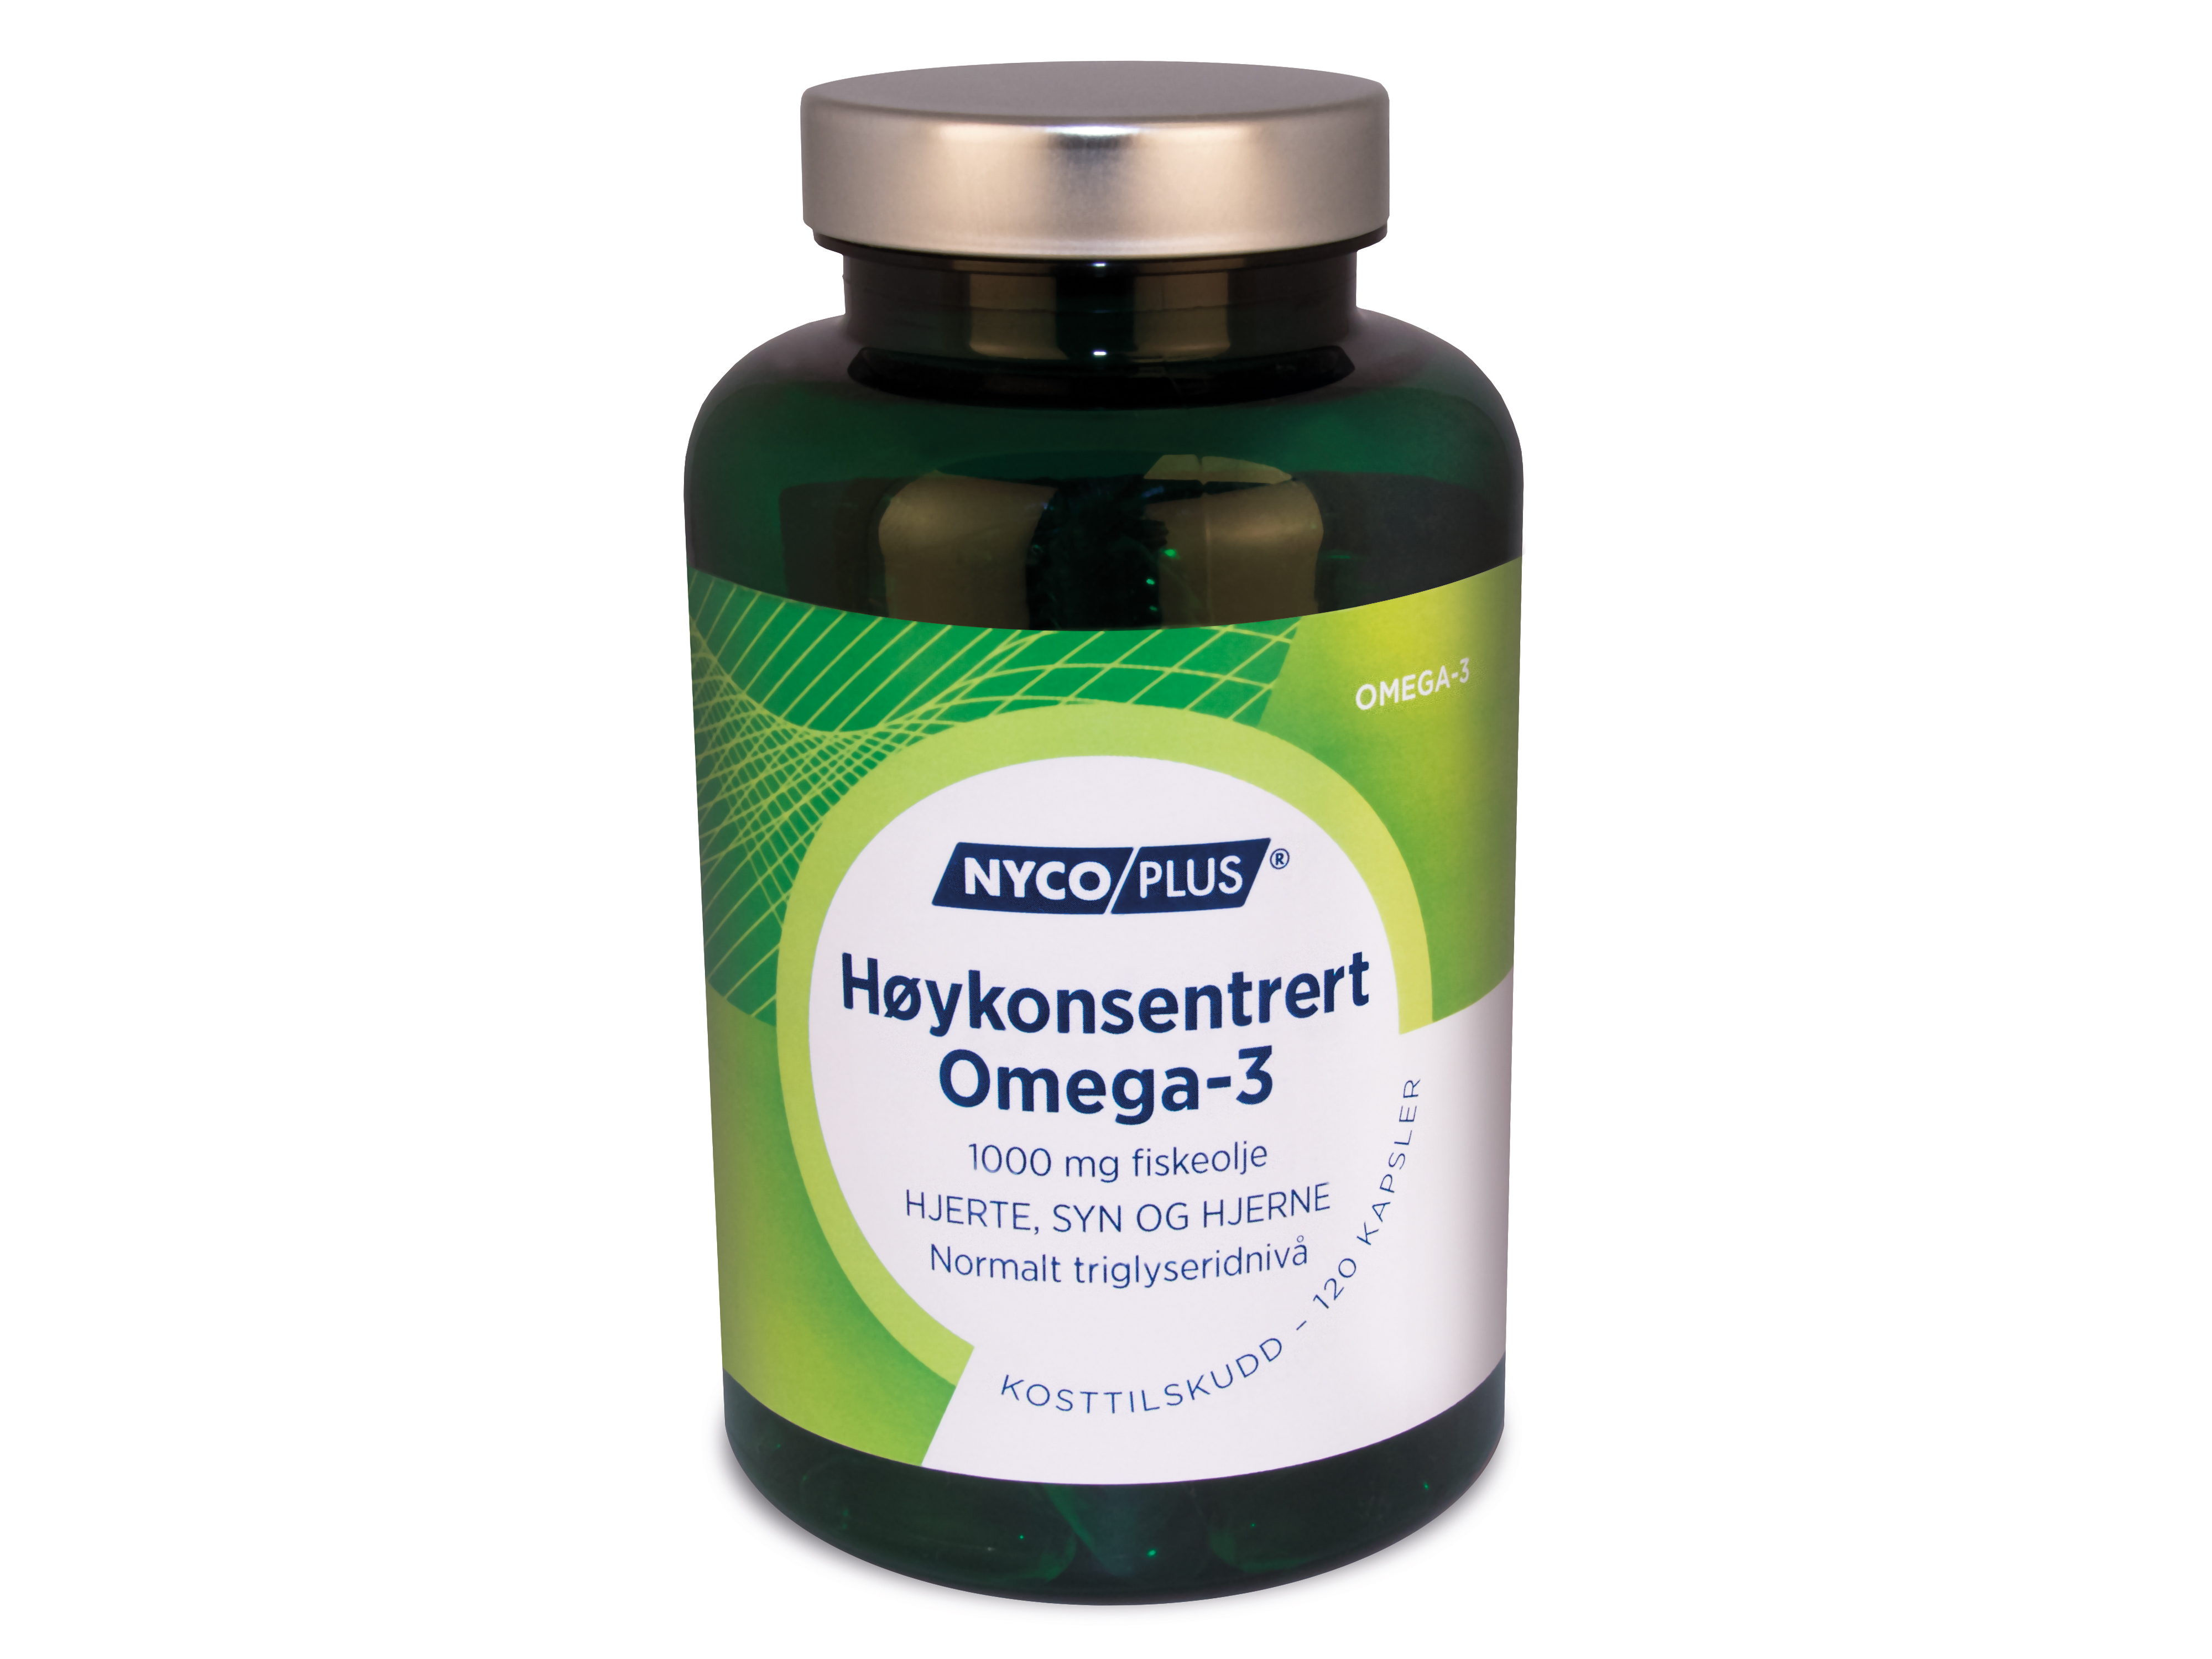 Nycoplus Høykonsentrert Omega-3, 1000 mg, 120 kapsler